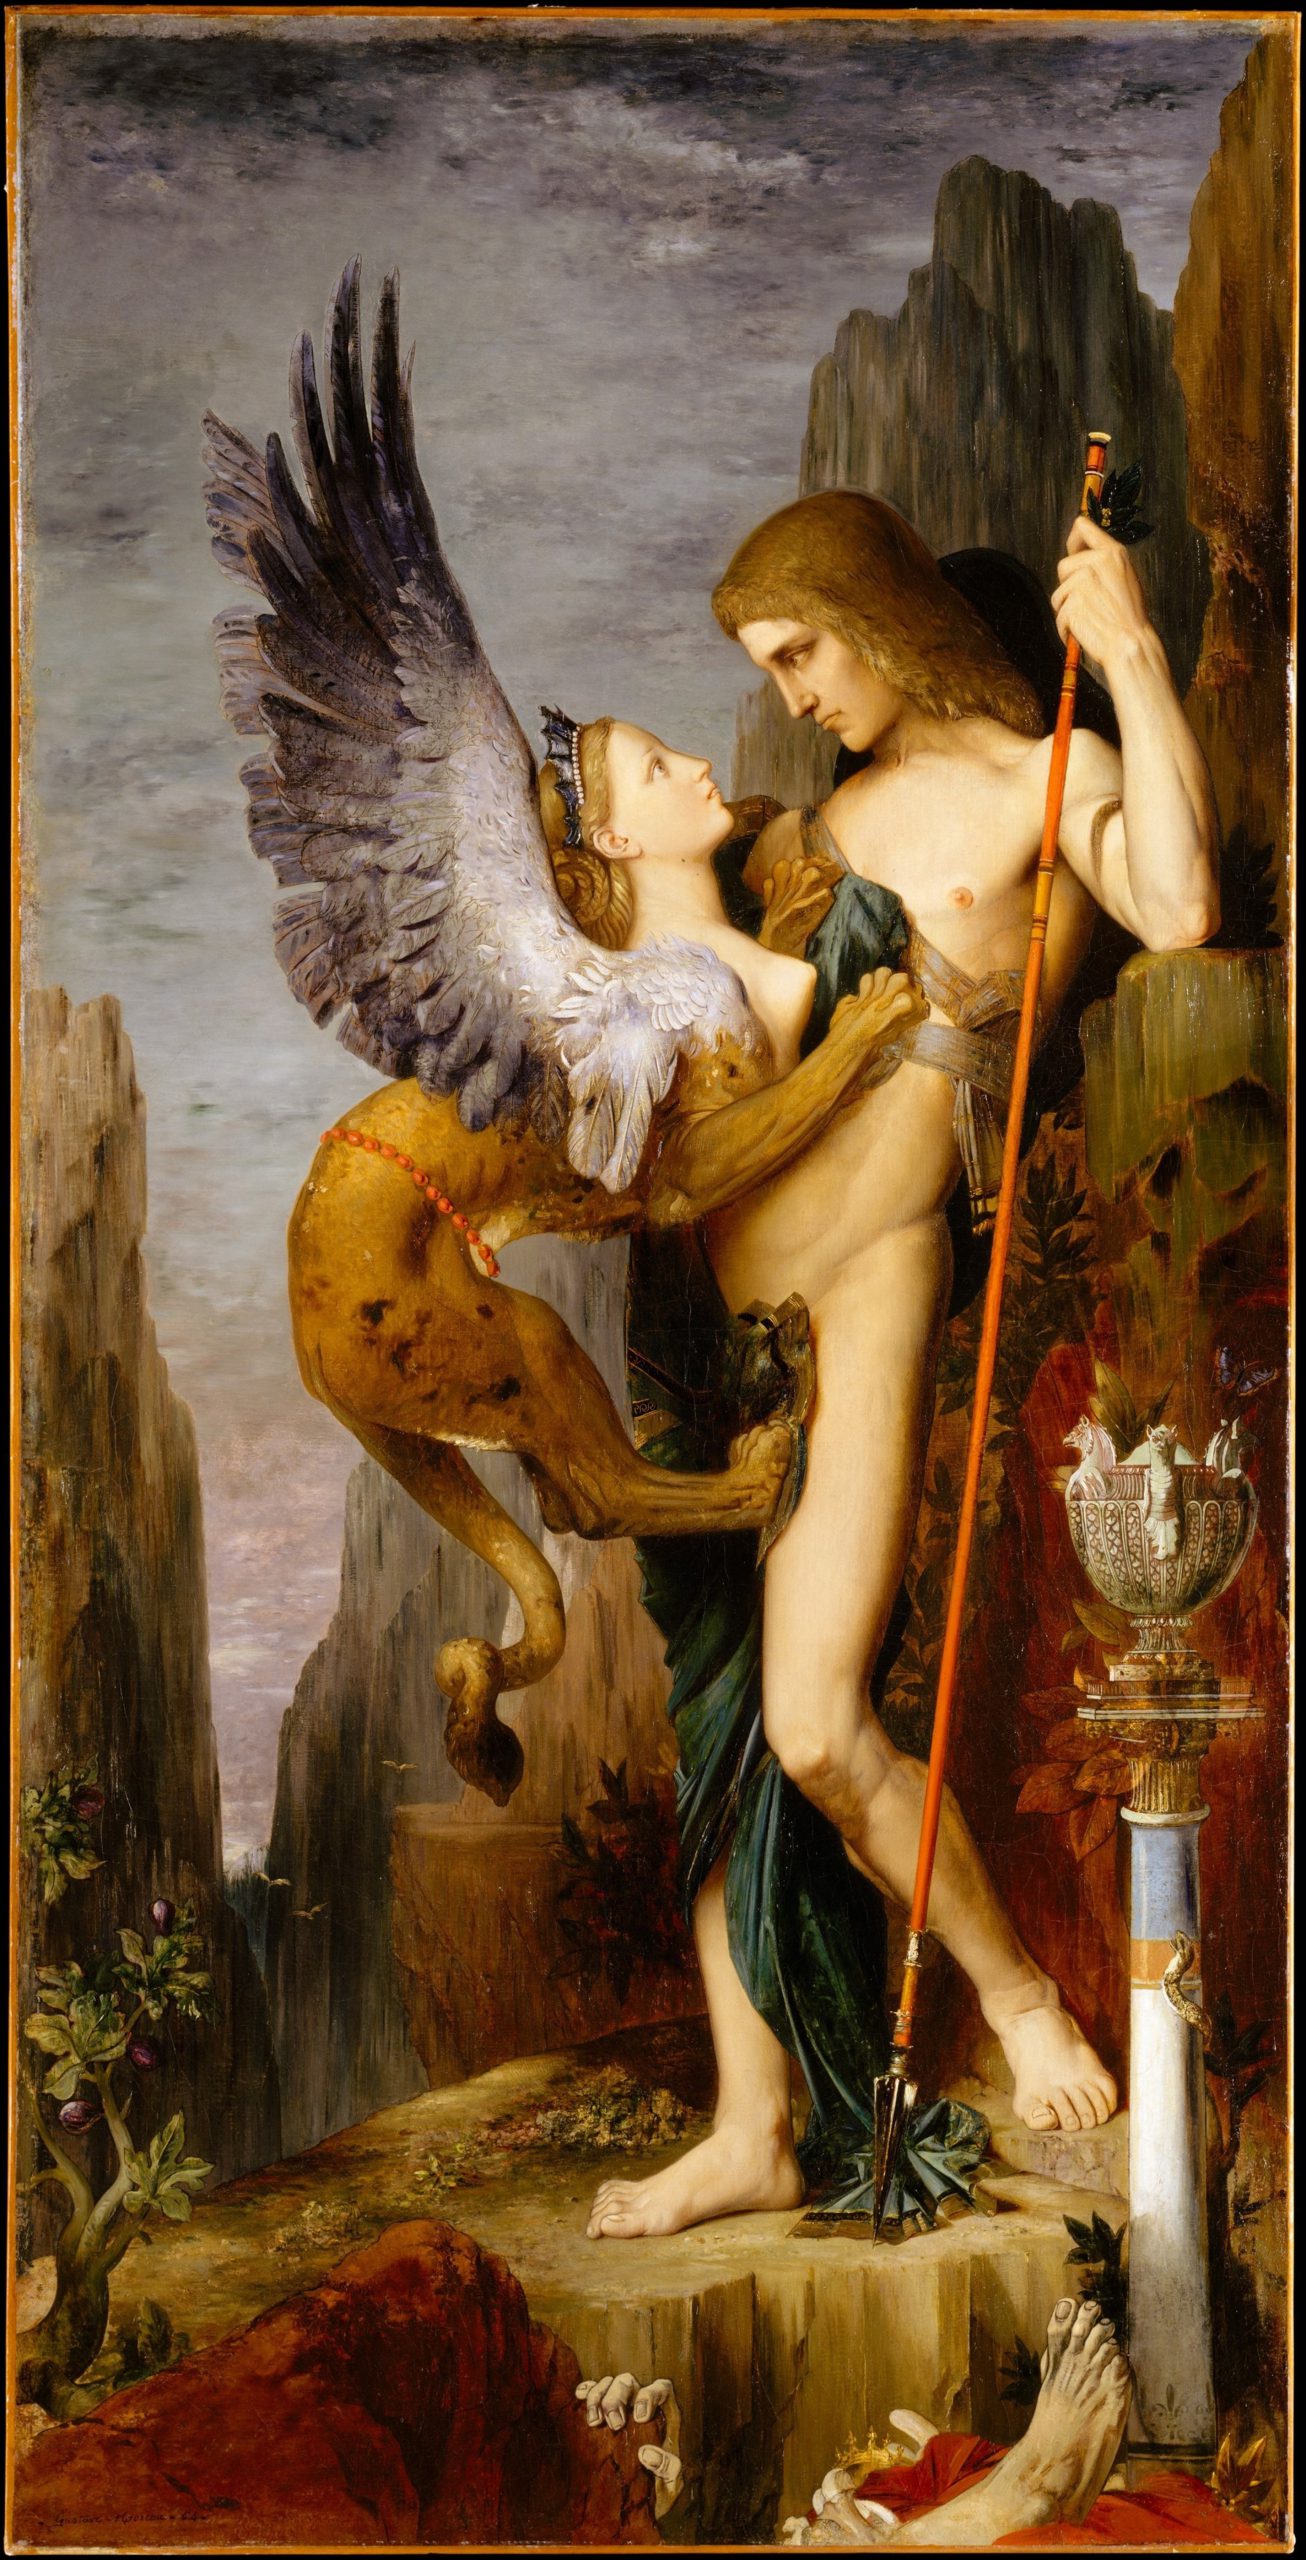 Moreau, Gustave. 1864. Oedipe et le Sphinx, huile sur toile, 206 x 105 cm, Paris, Musée national Gustave Moreau.
